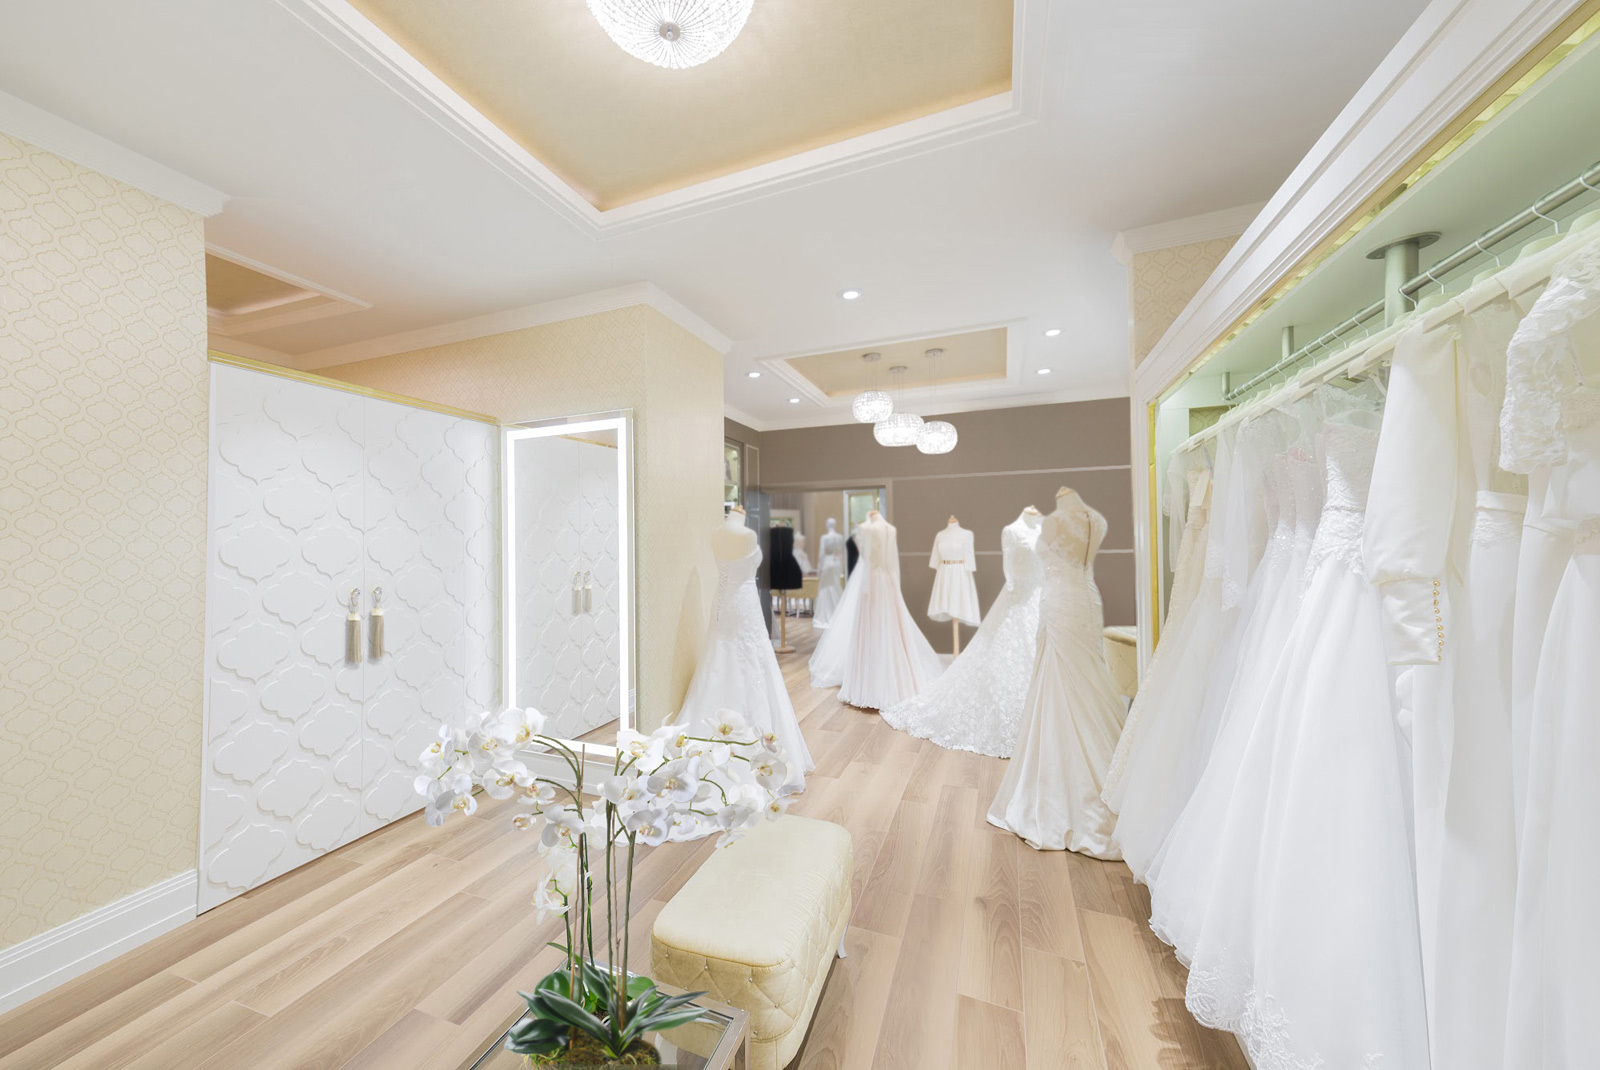 Projektowanie wnętrz - salon sukien ślubnych widok